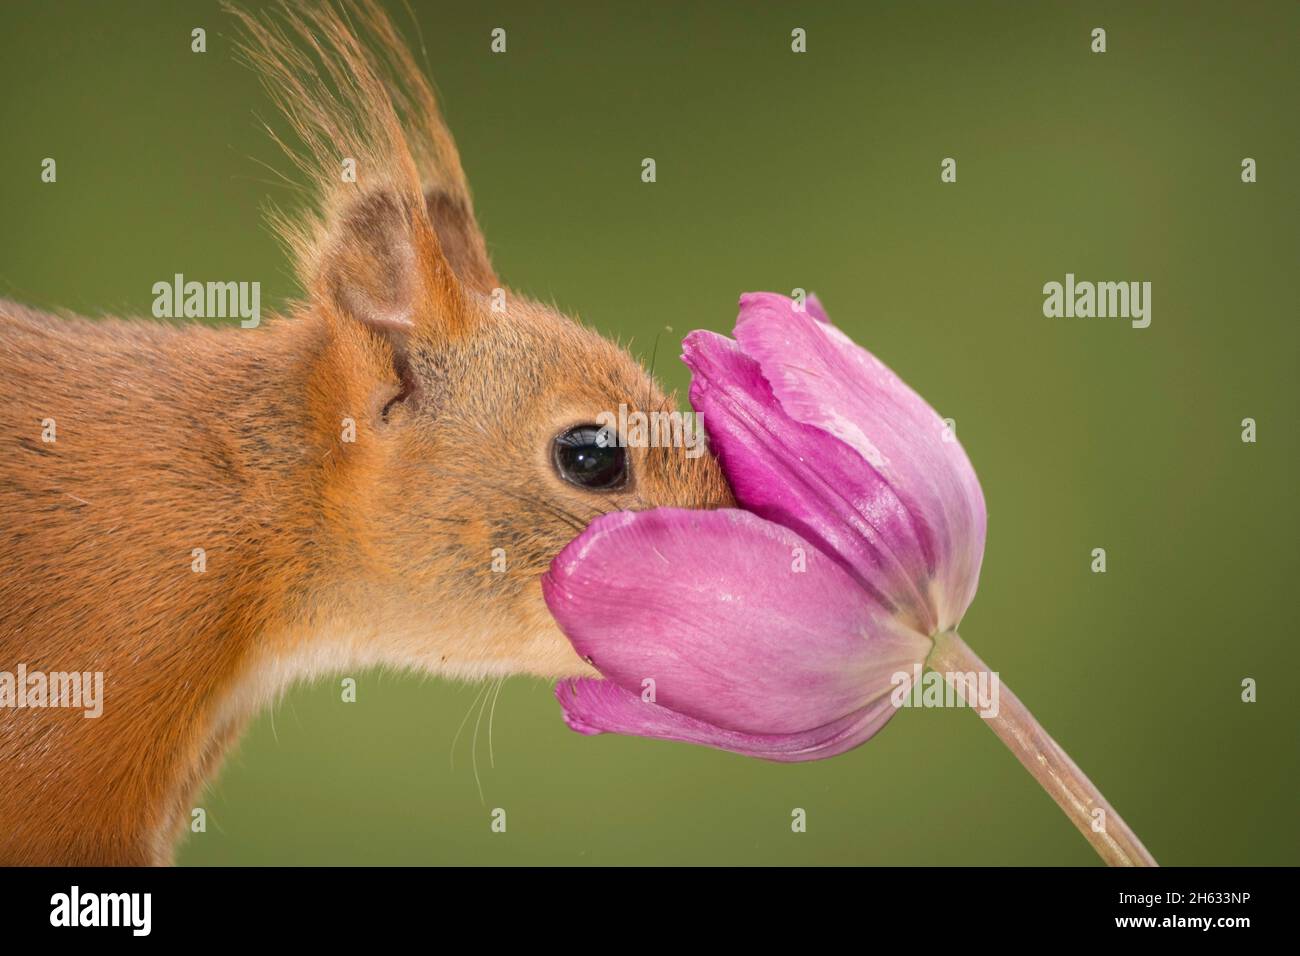 Nahaufnahme des roten Eichhörnchens, das mit dem Gesicht in einer Tulpe steht Stockfoto